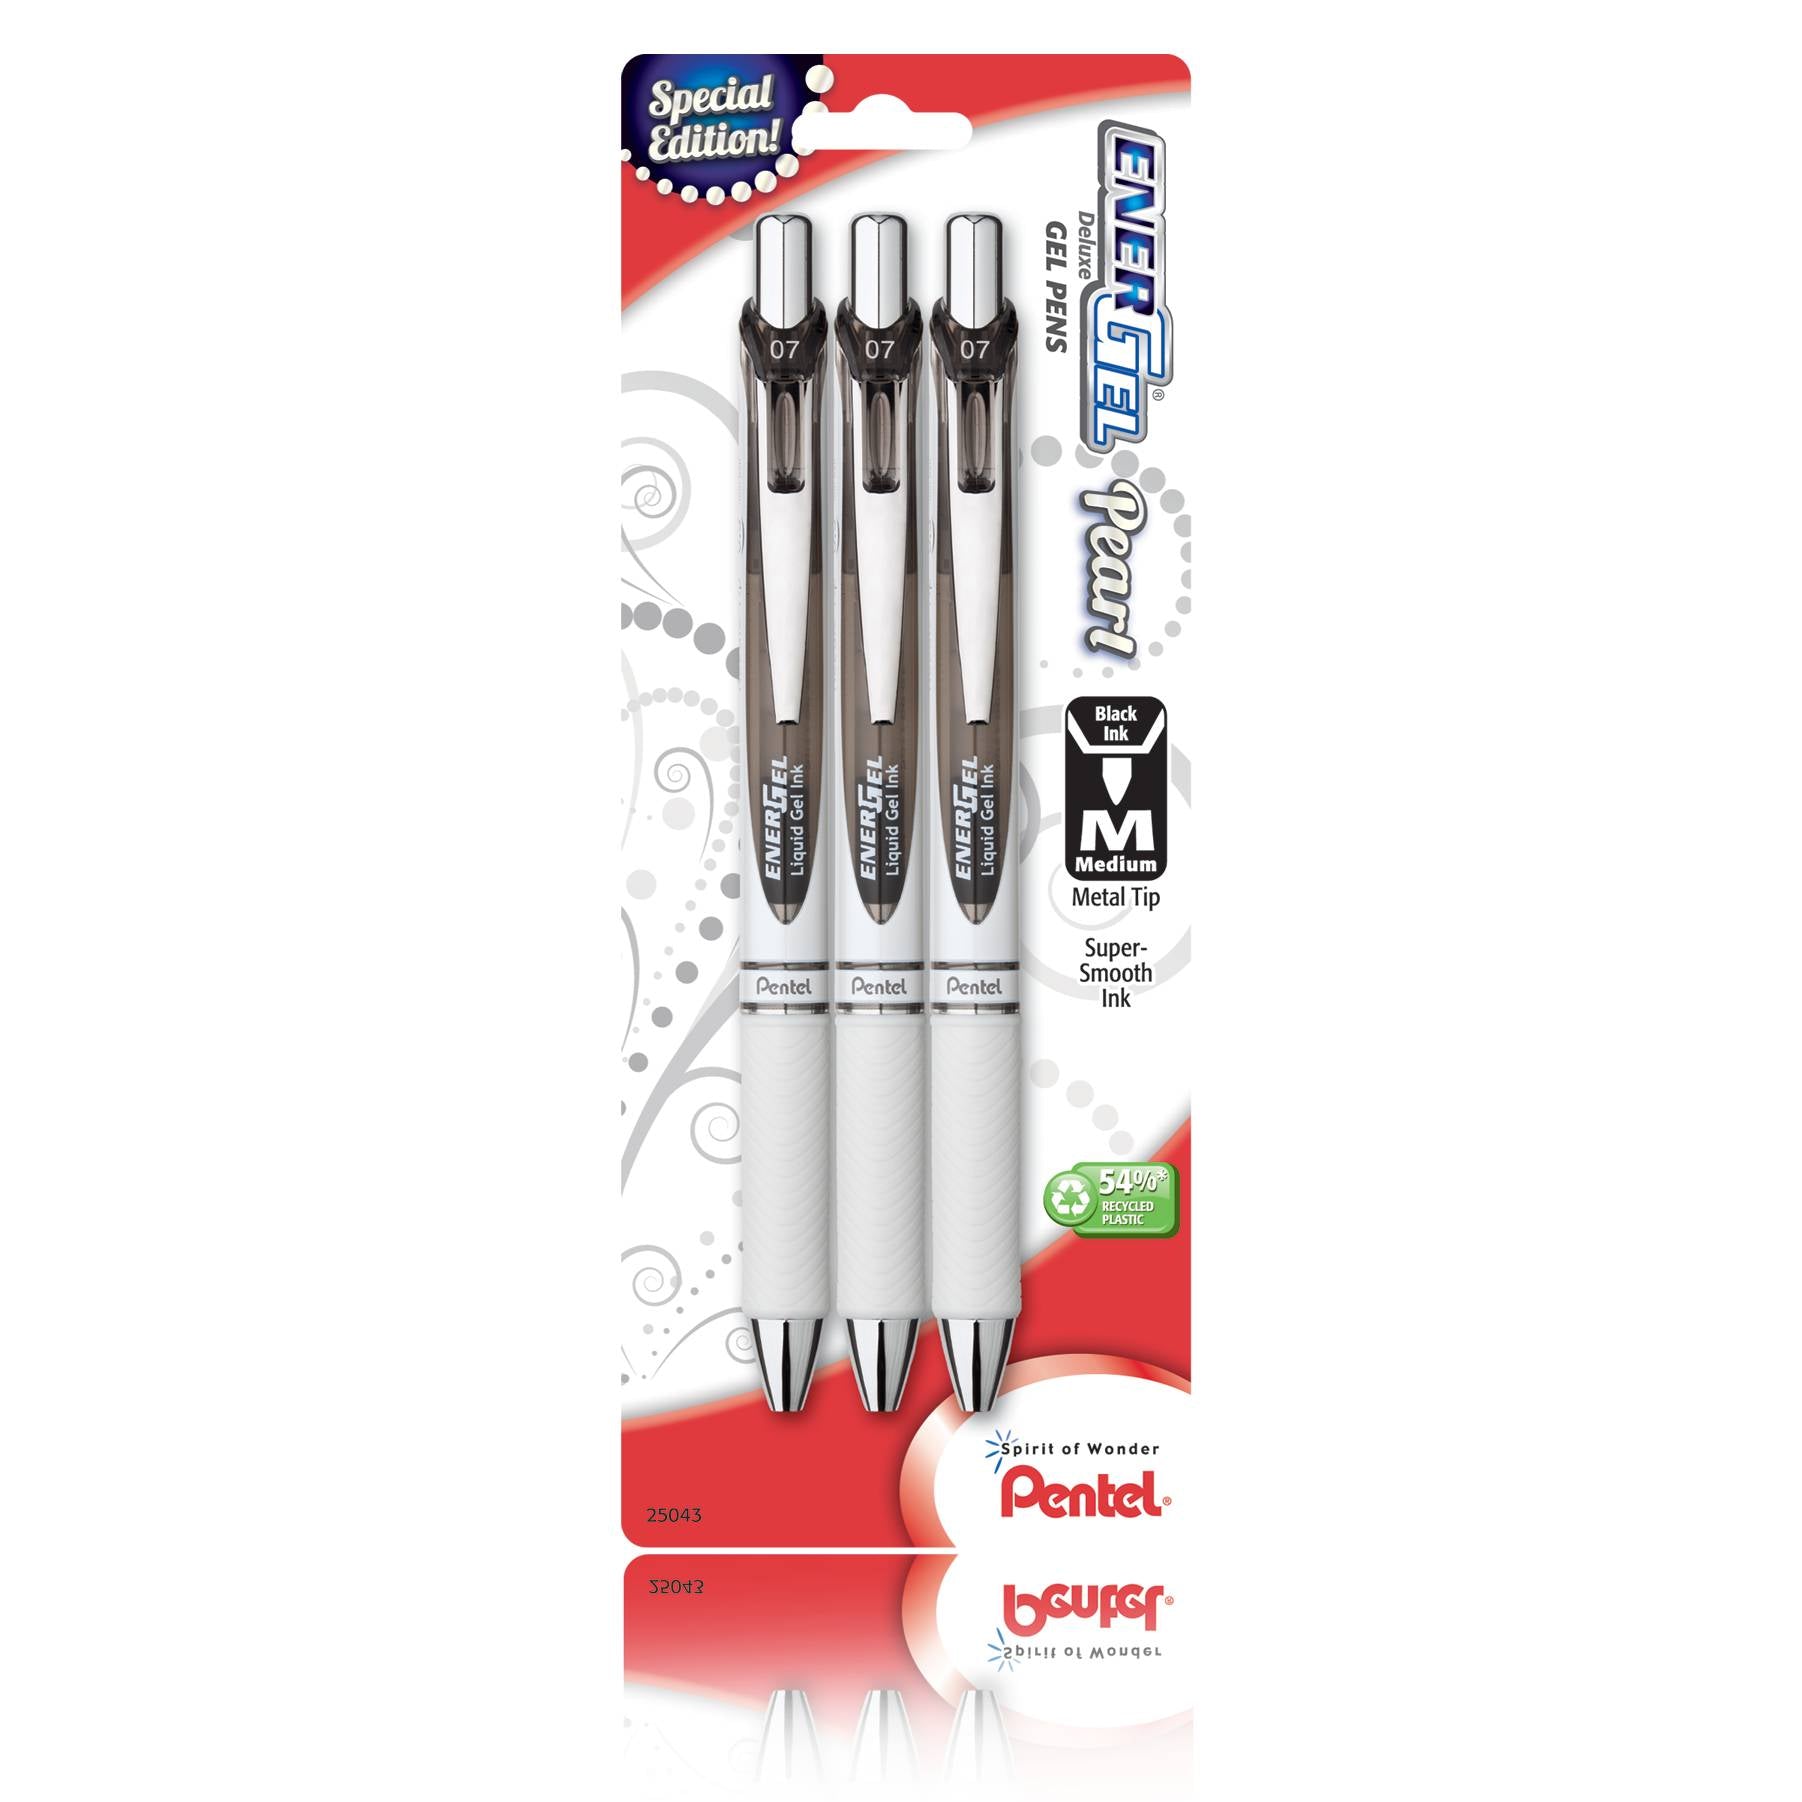 Pentel BL77WBP3A, BL77WBP3C, BL77WBP3M1, BL77WBP3V EnerGel Pearl Retractable Liquid Gel Pens, 0.7mm Medium Lines, Metal Tip, 3-Pack